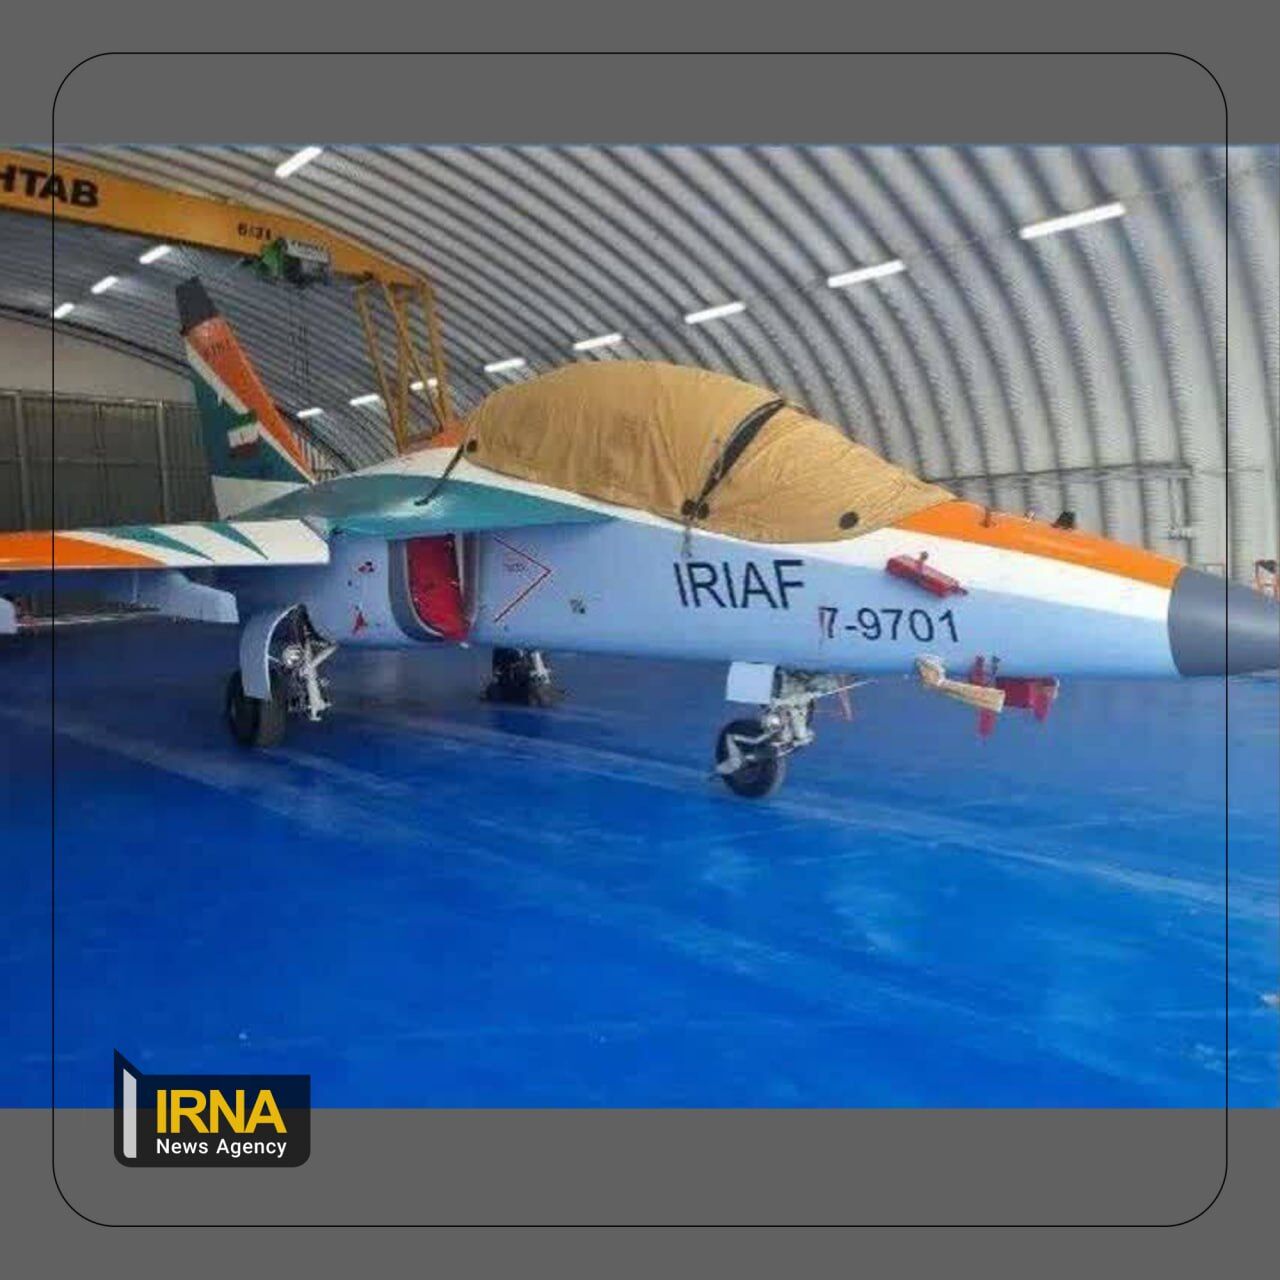 Un avion d'entraînement Yak-130 aurait été importé en Iran